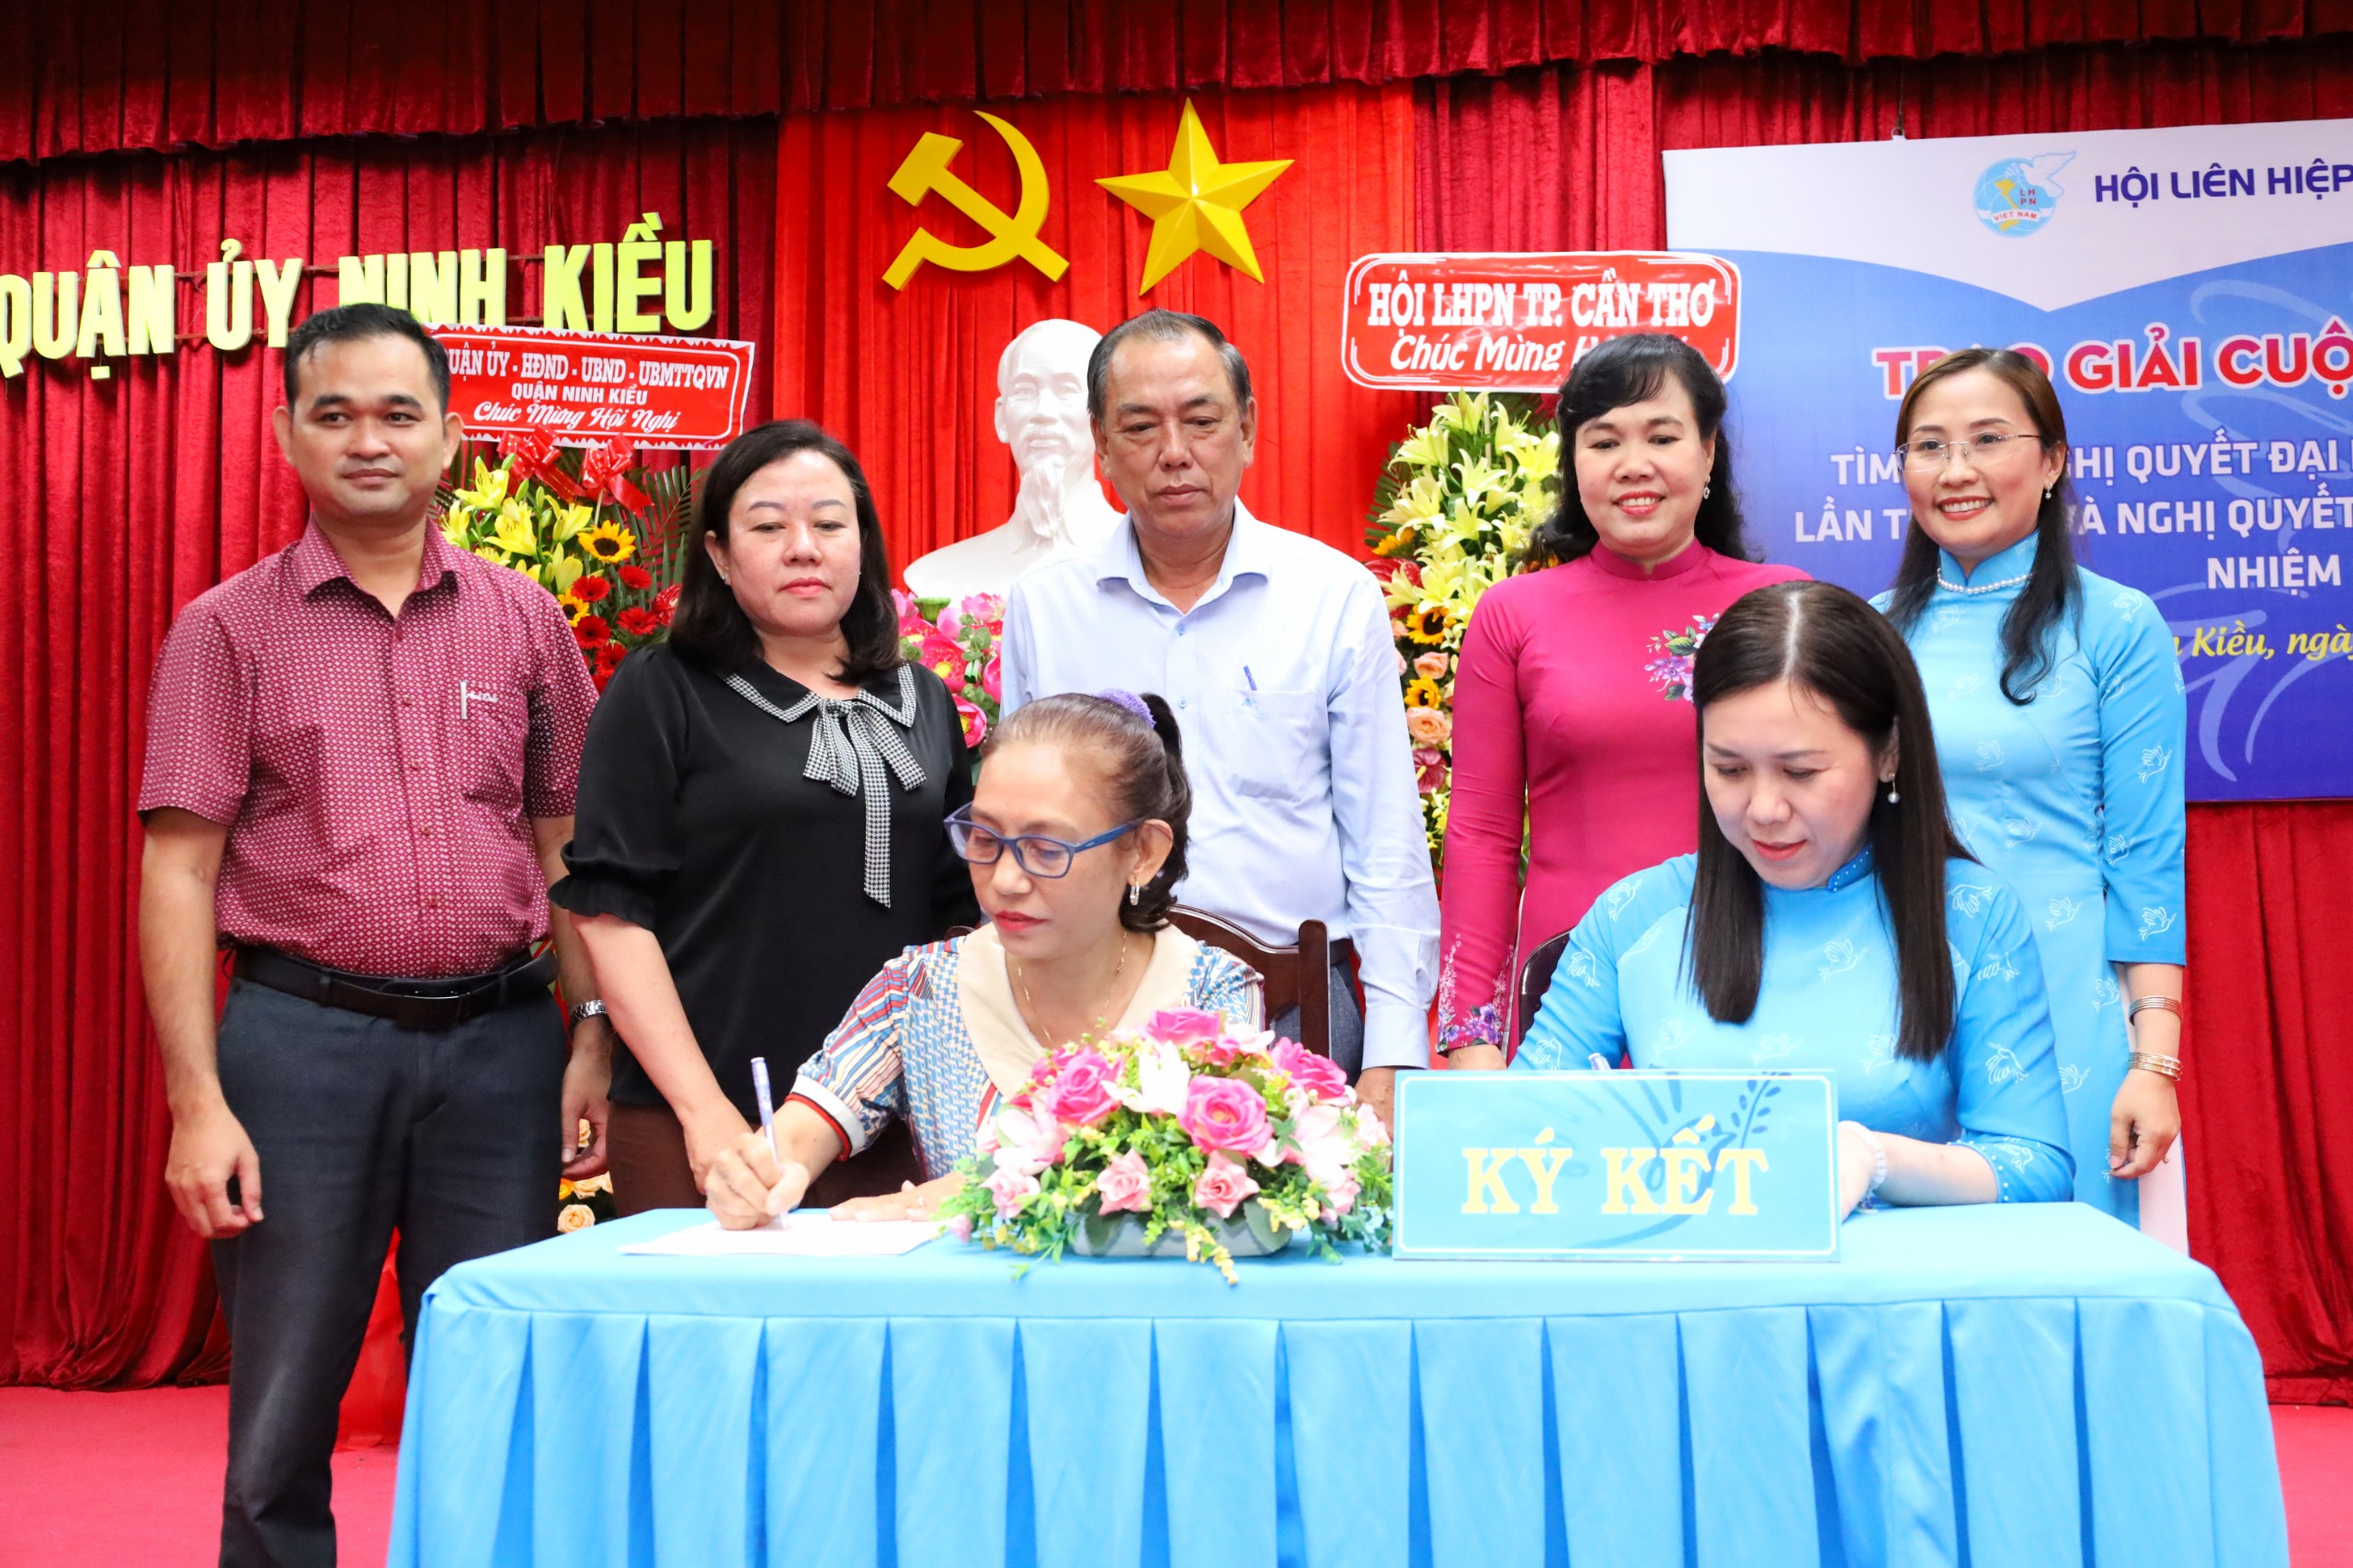 Bà Nguyễn Thị Hồng Nga - Chủ tịch Hội LHPN quận Ninh Kiều và bà Trần Thị Đoan Trang – Trưởng phòng Dân tộc quận Ninh Kiều ký kết chương trình phối hợp công tác giai đoạn 2021 – 2025.